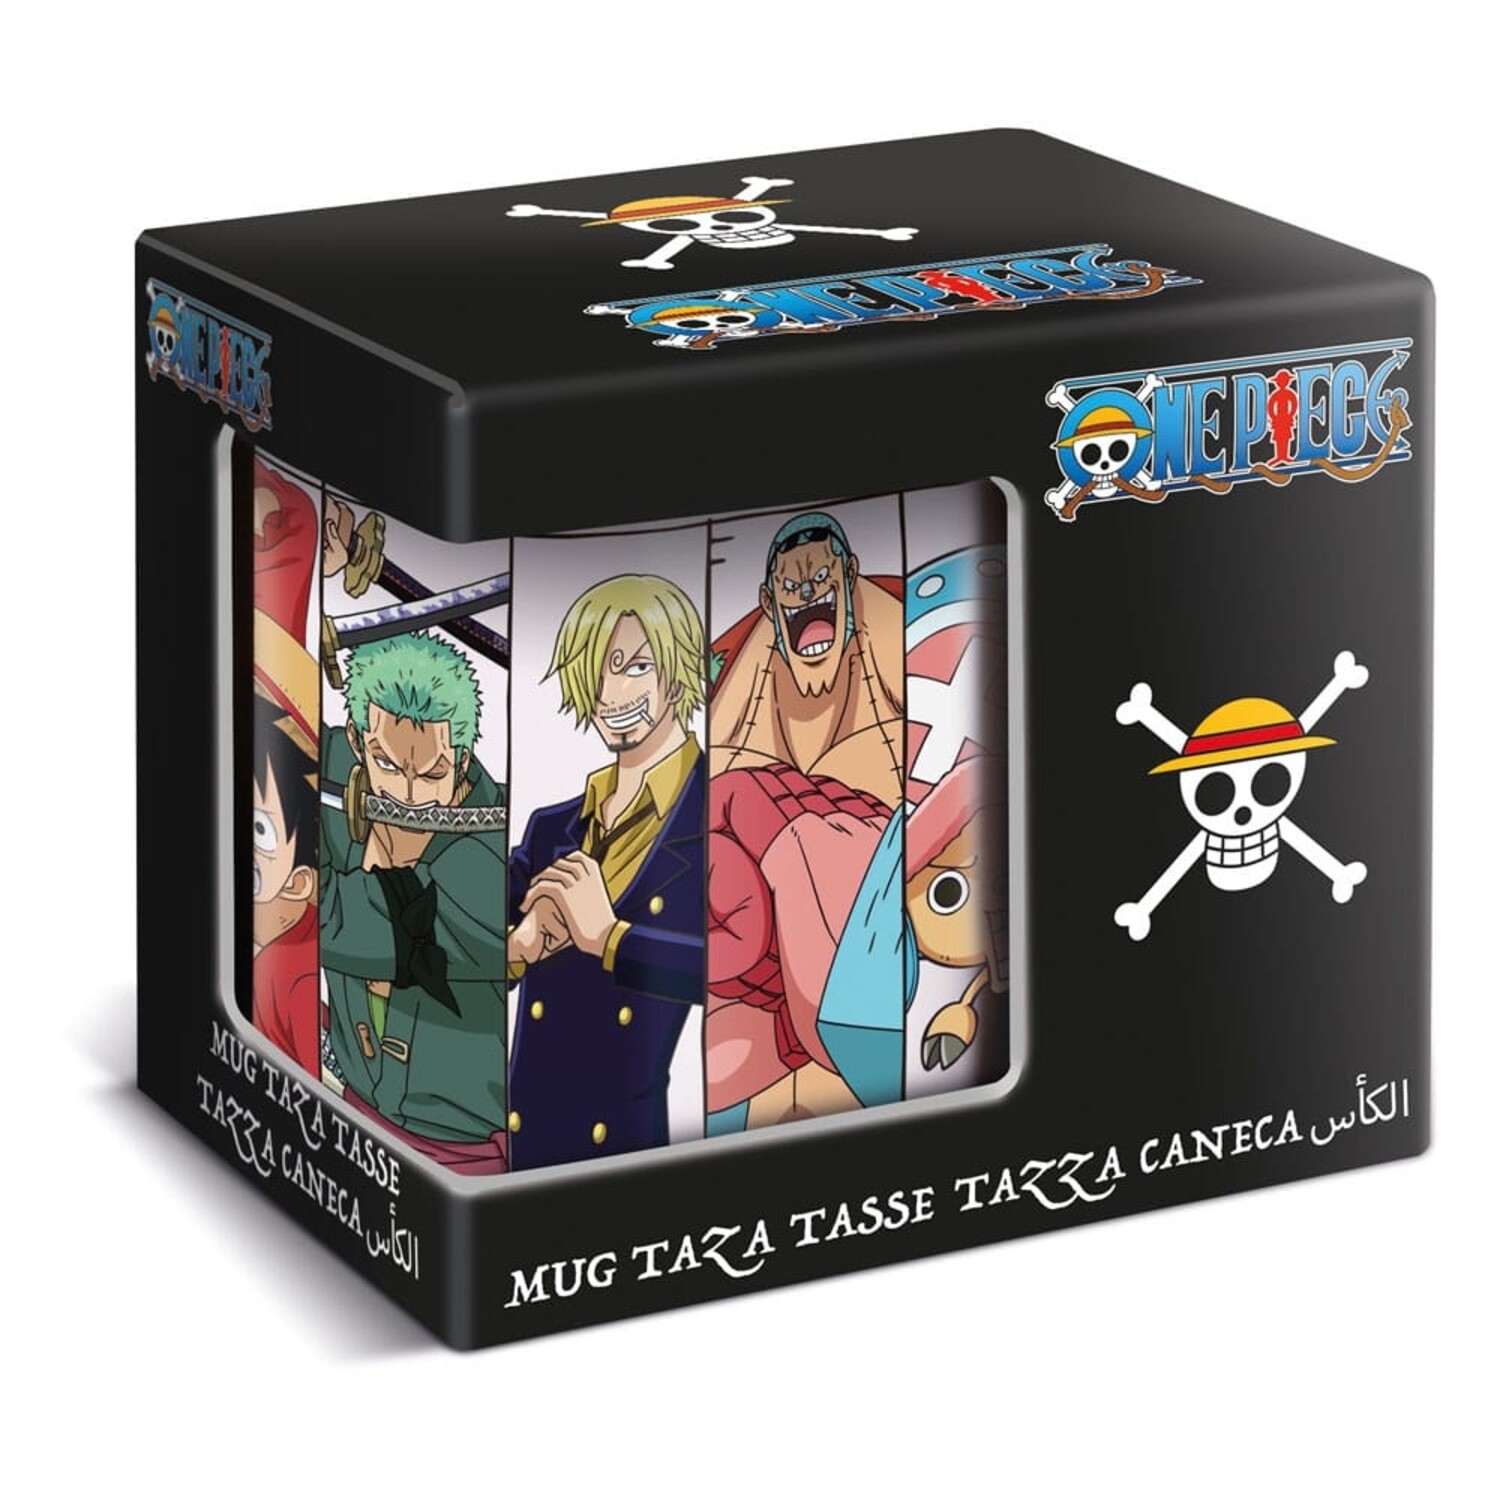 Tazas One Piece 12,99 €